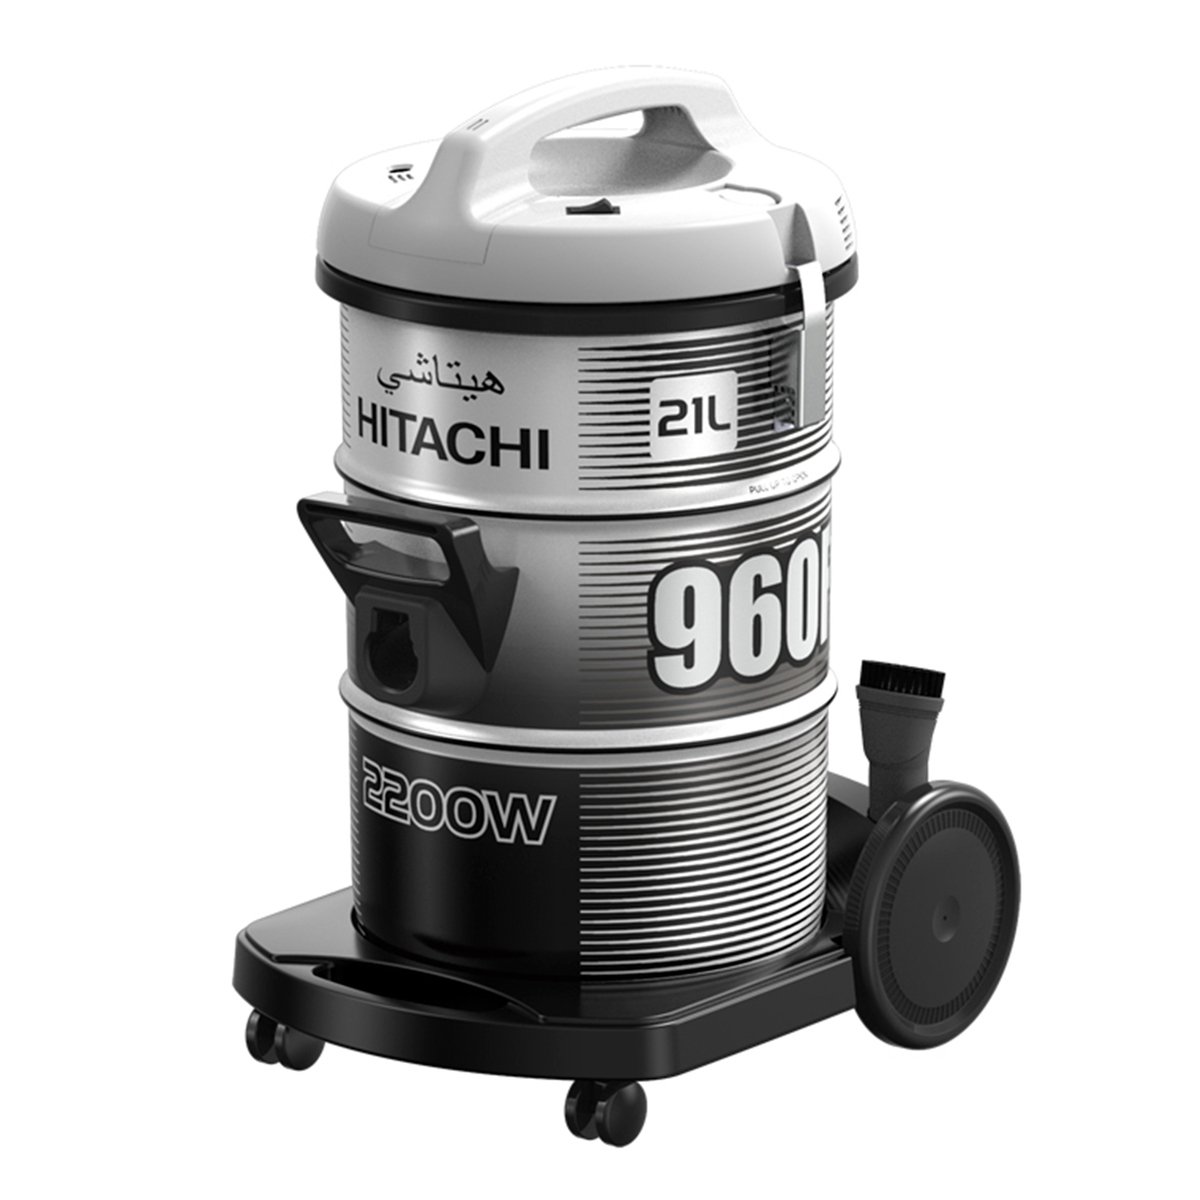 Hitachi Drum Vacuum Cleaner CV960F240CD 2200W